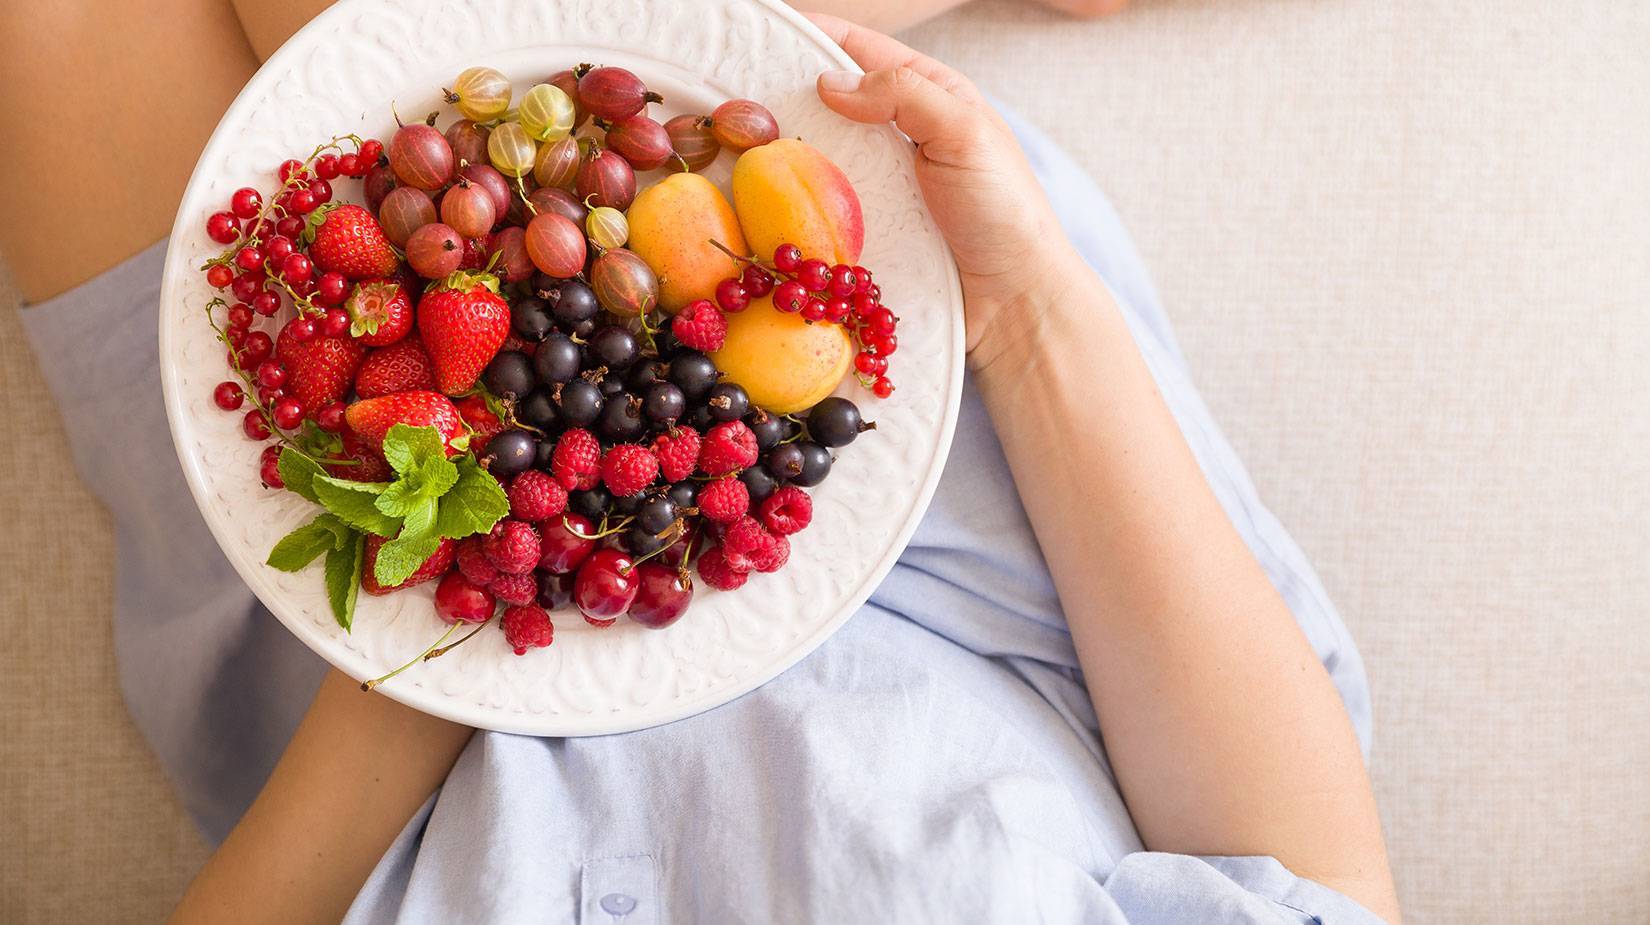 10 фруктов, которые полезны в зимнее время года для детей и будущих мам